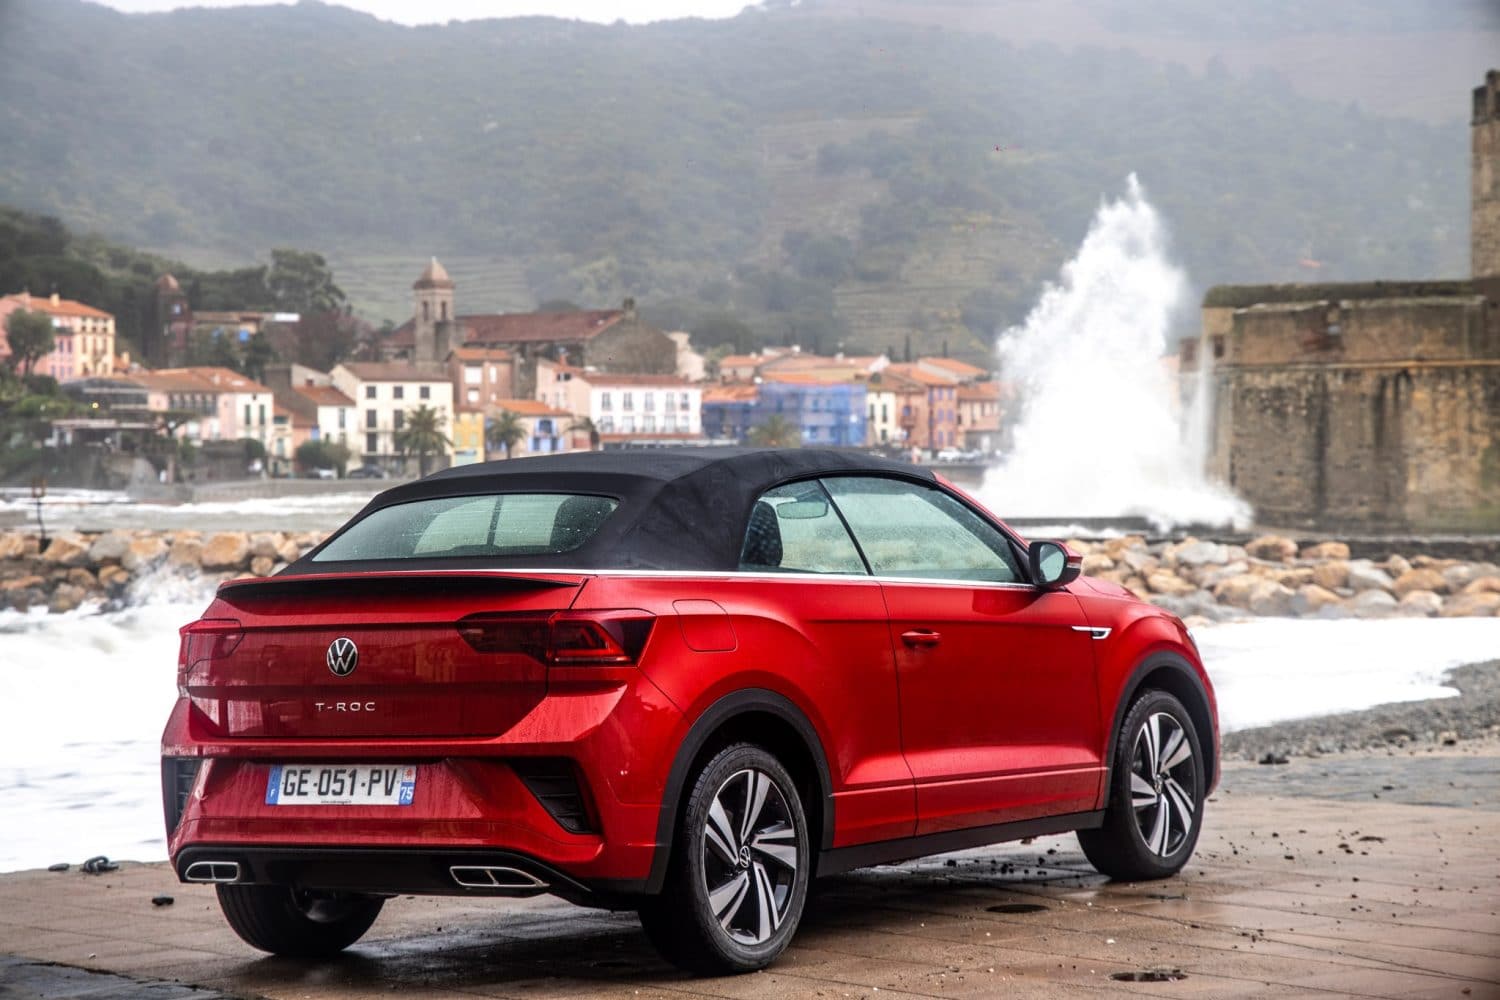 Deliveries of the Volkswagen T-Roc 2022 start in Spain